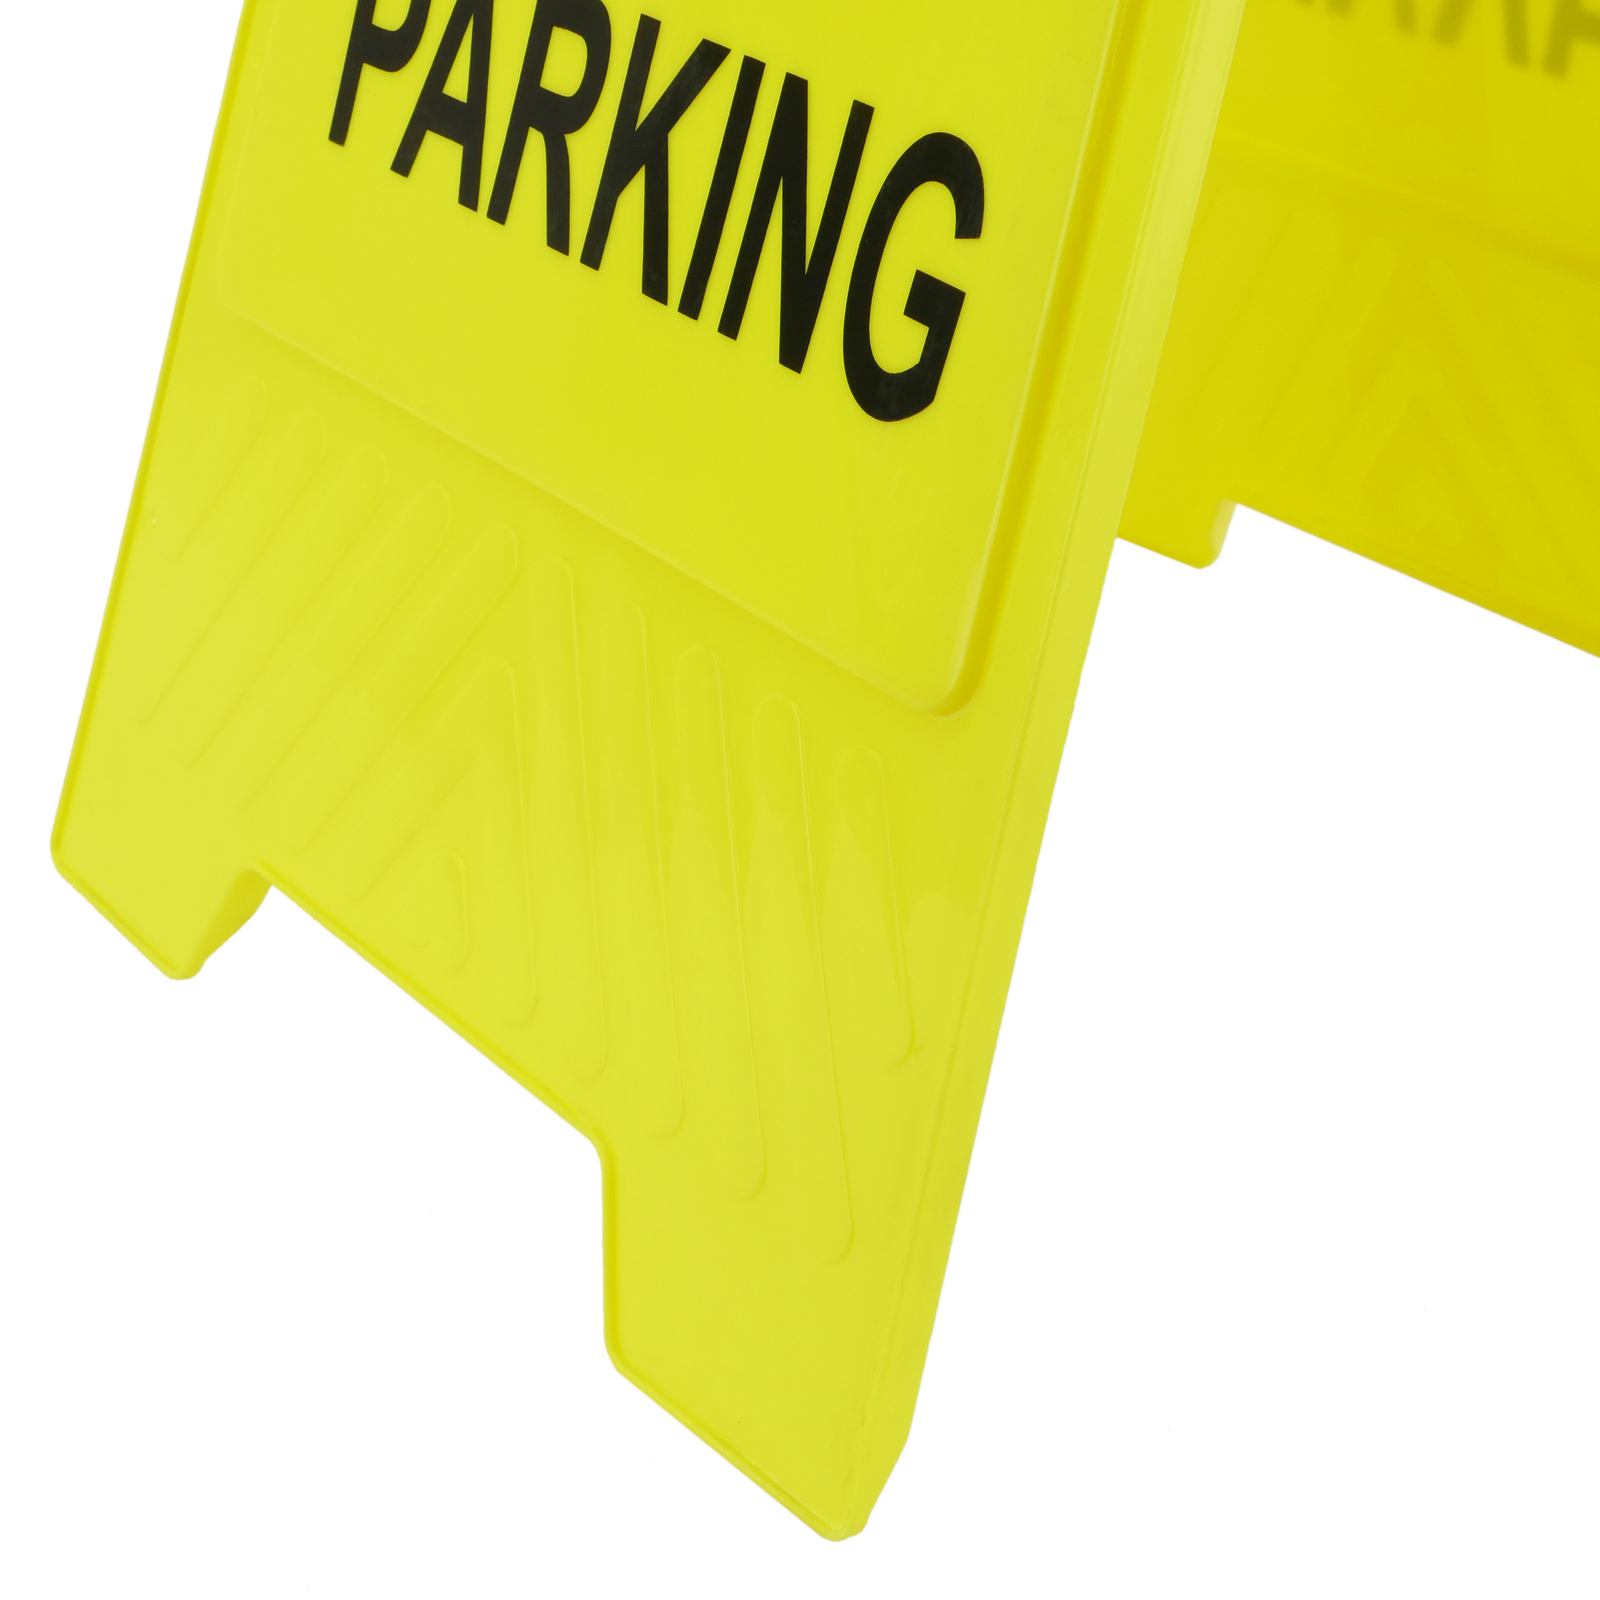 Plaque pour parking stationnement interdit – Plomeis